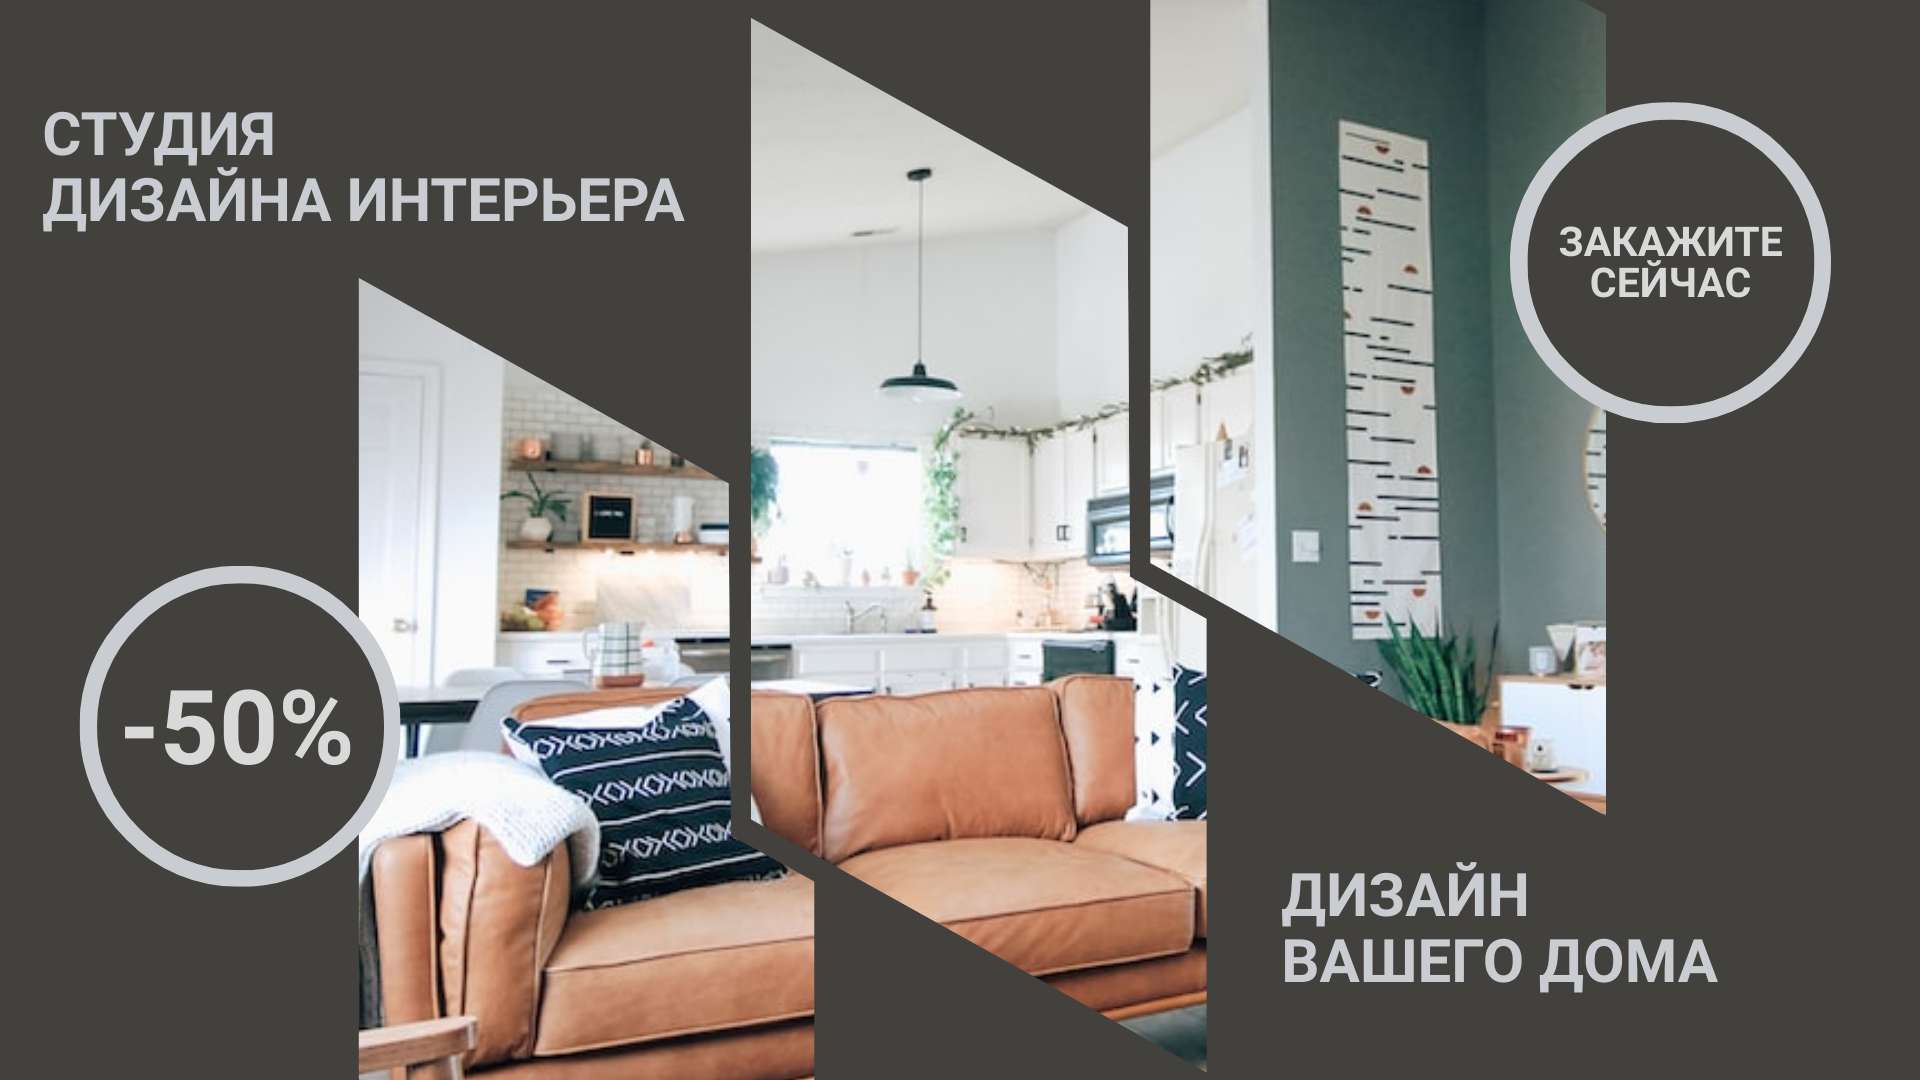 Домашний интерьер - Дизайн идеи | ВКонтакте